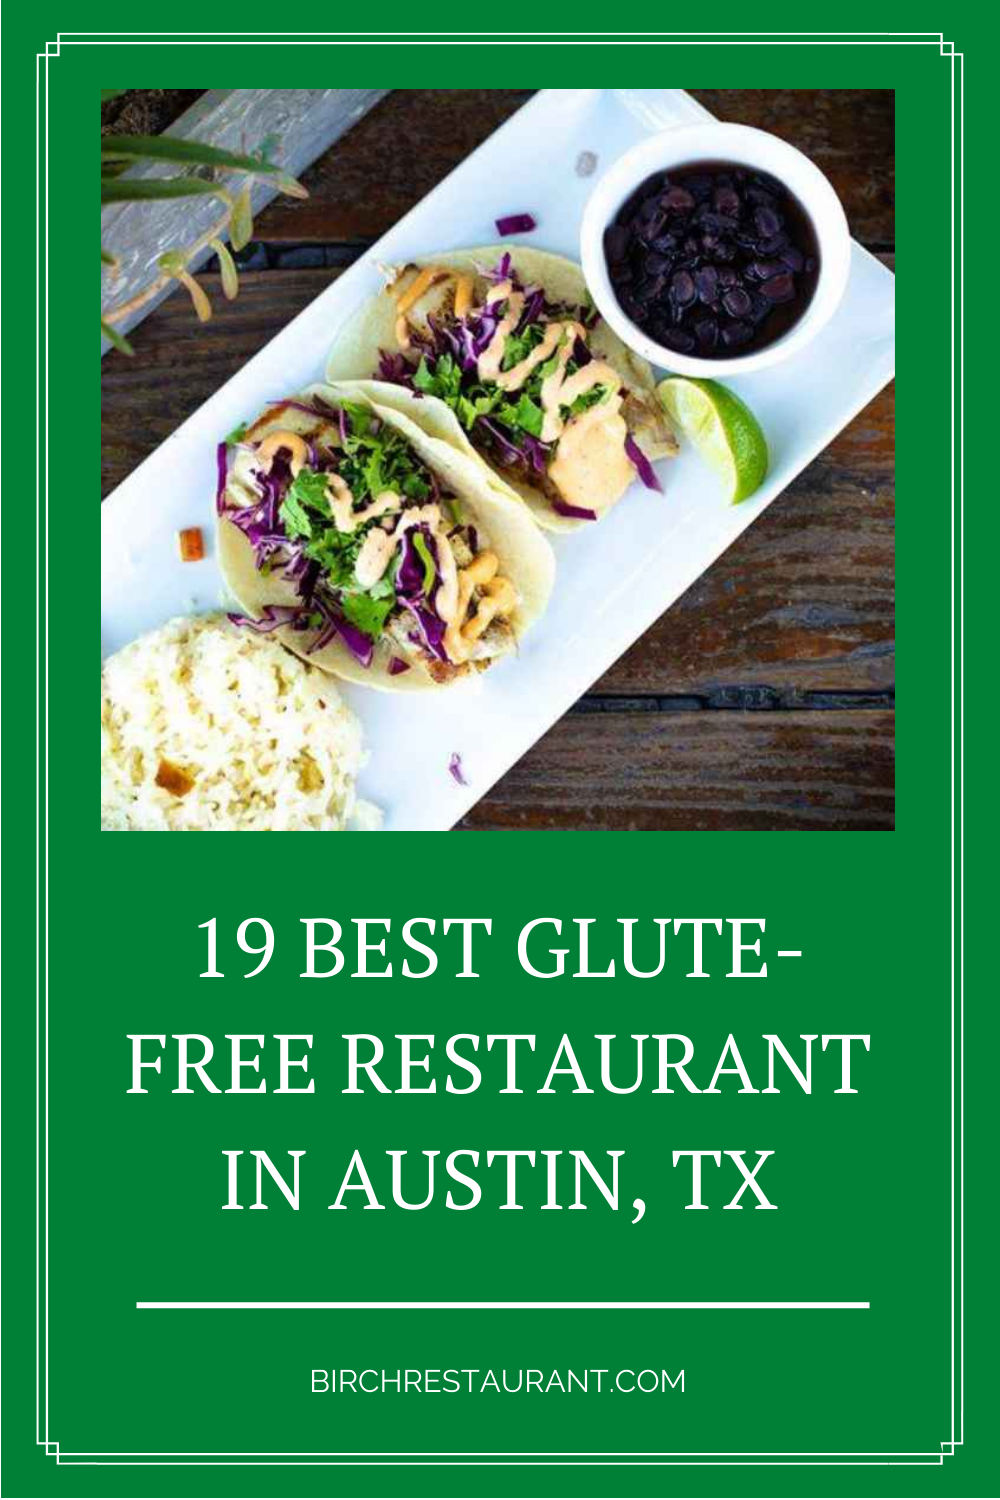 Glute-Free Restaurant in Austin, TX